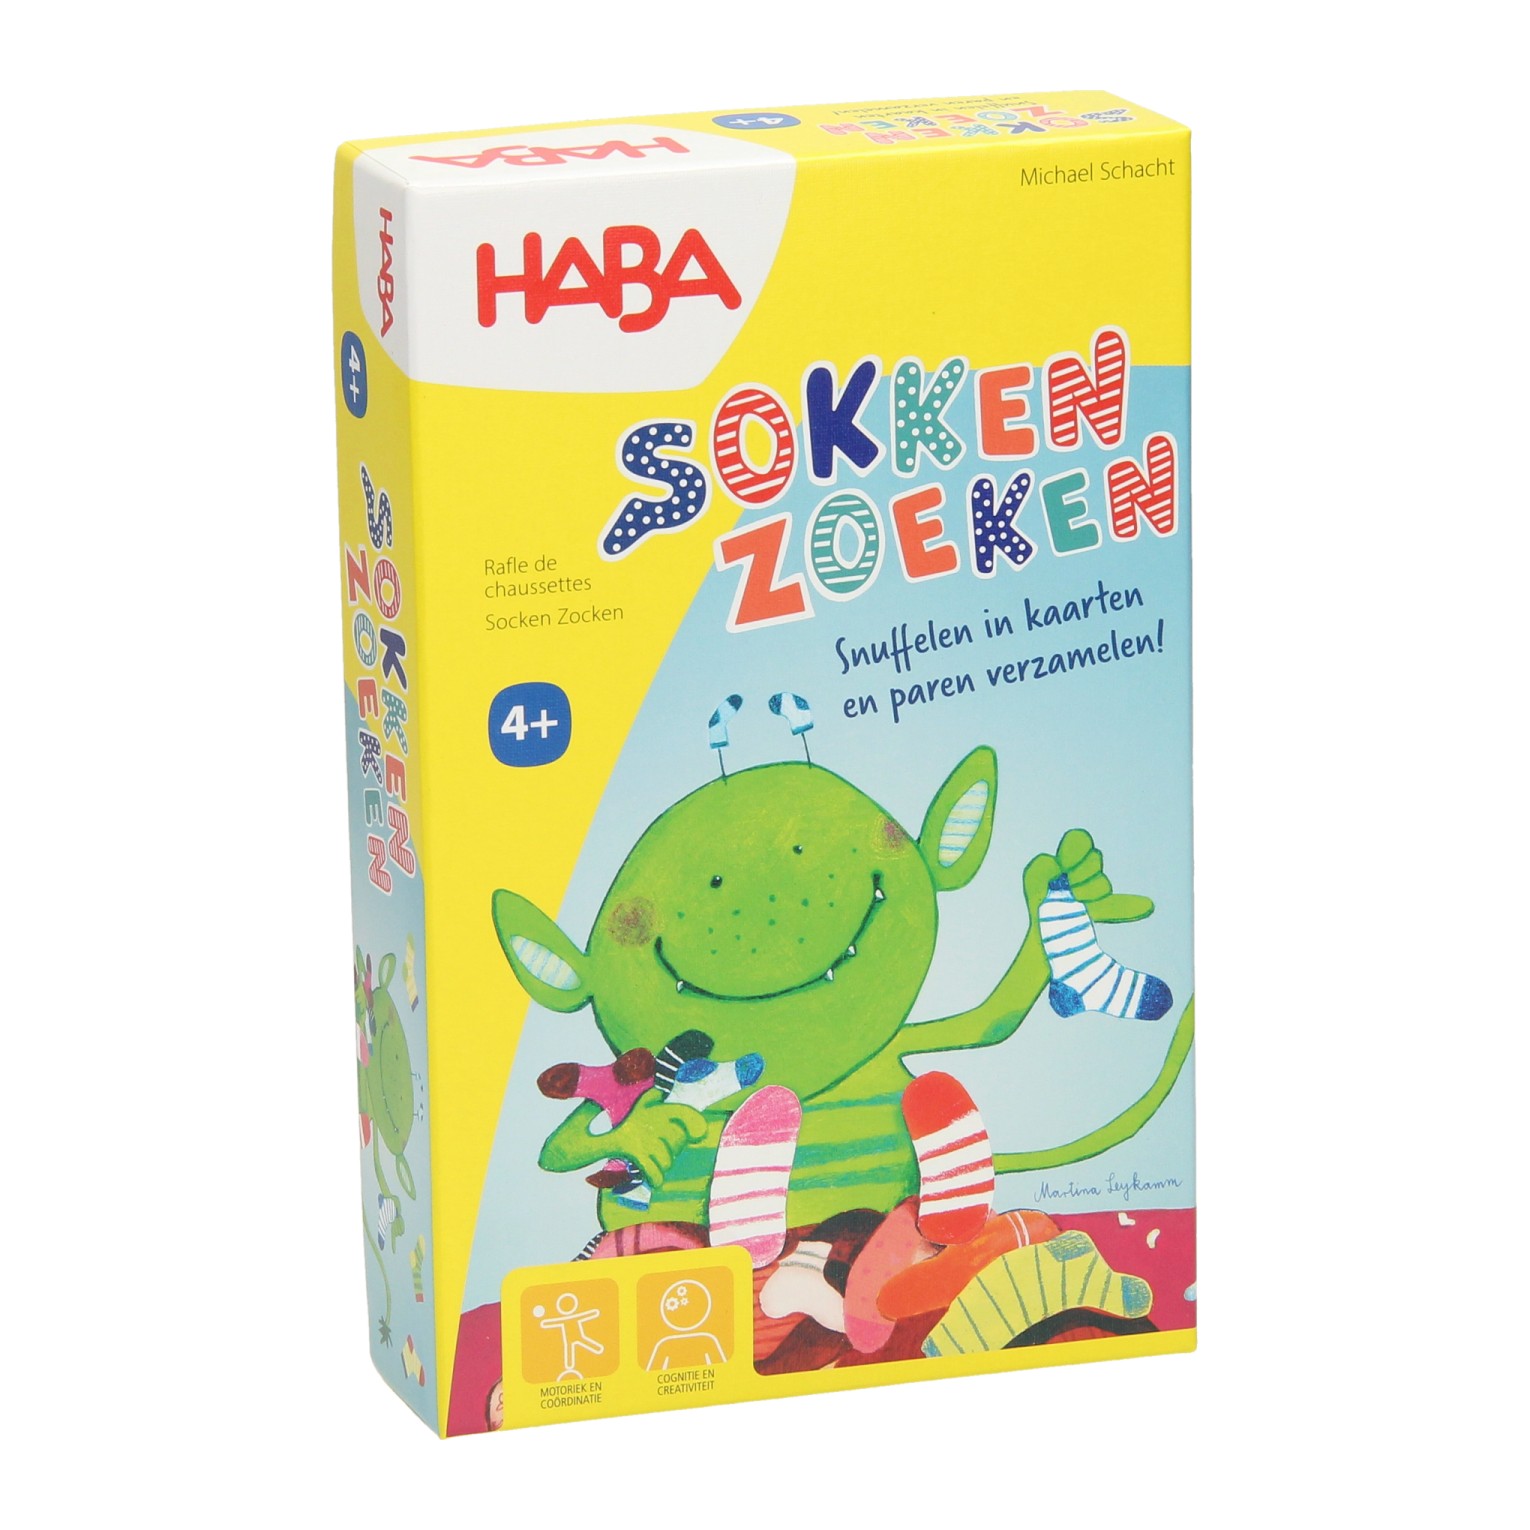 Haba Game - Socken suchen